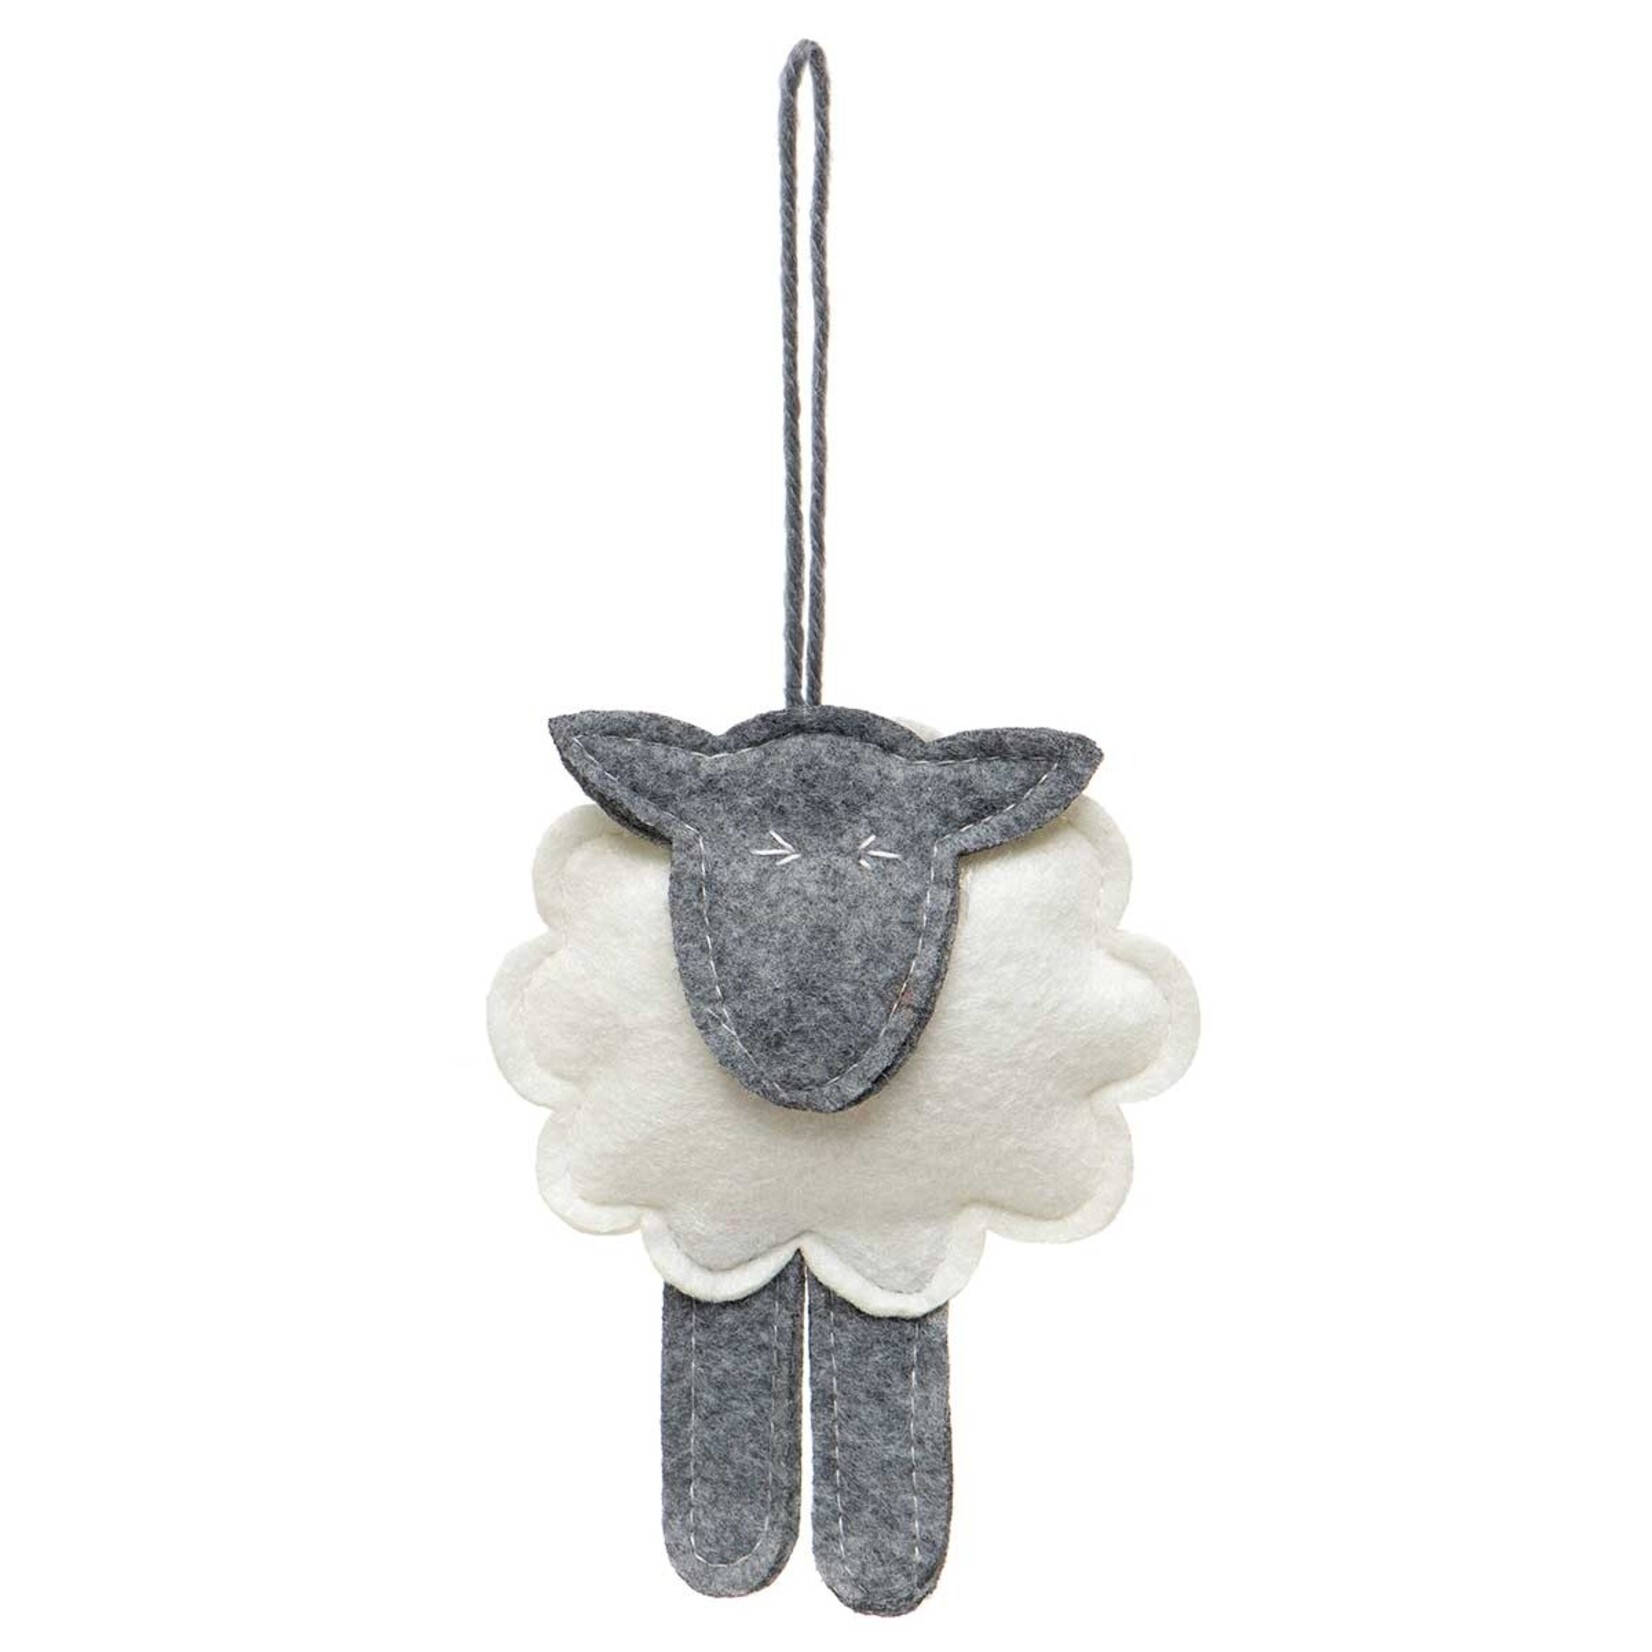 Meravic Felt Lamb Ornament